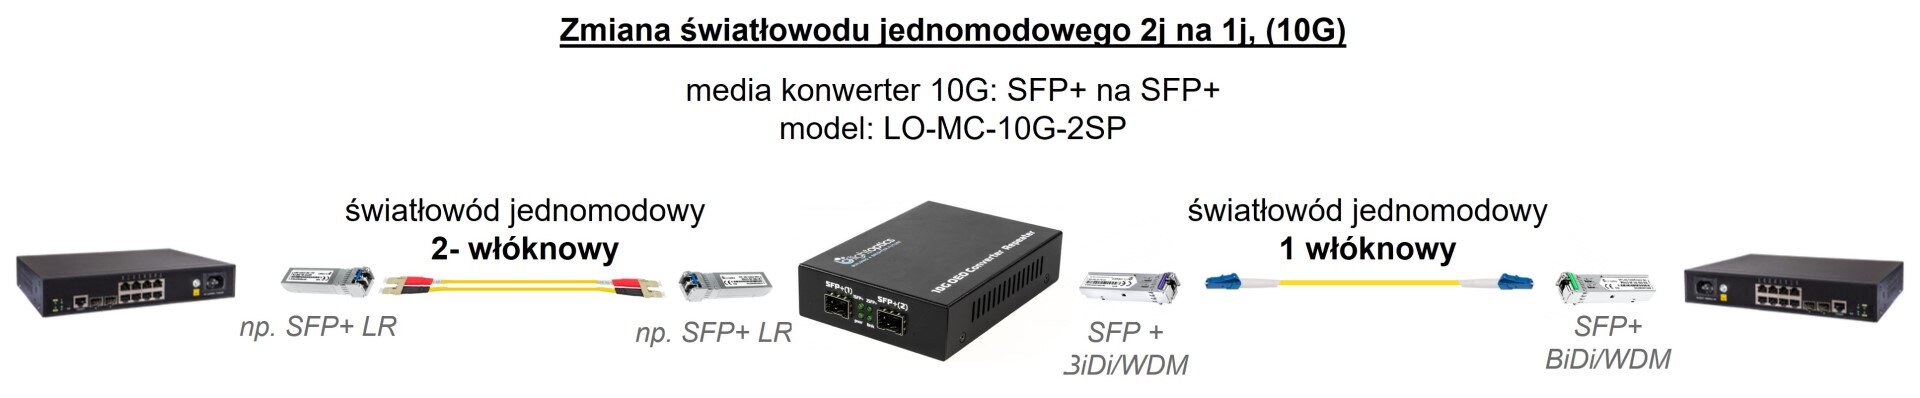 konwerter światłowodowy SFP+10G 2j na 1j.jpg